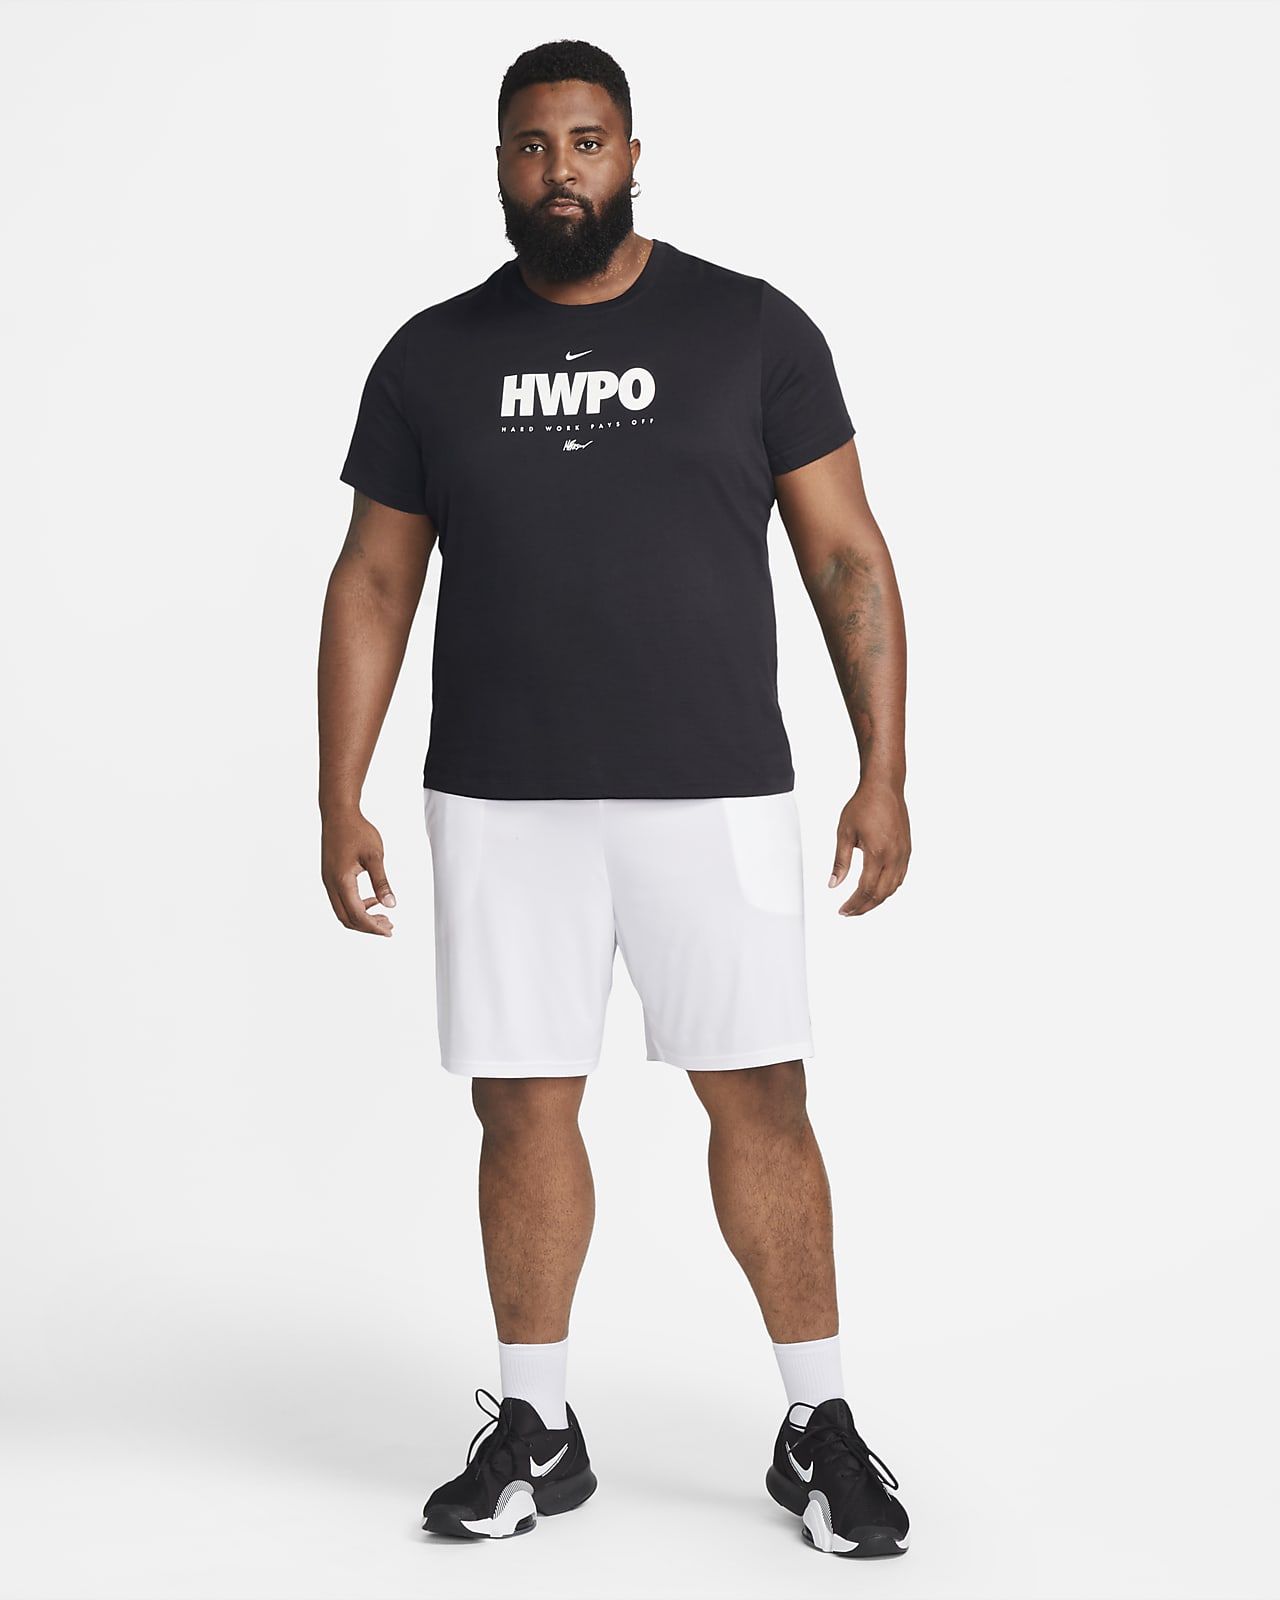 Nike Dri-FIT 'HWPO' Men's Training T-Shirt. Nike NL